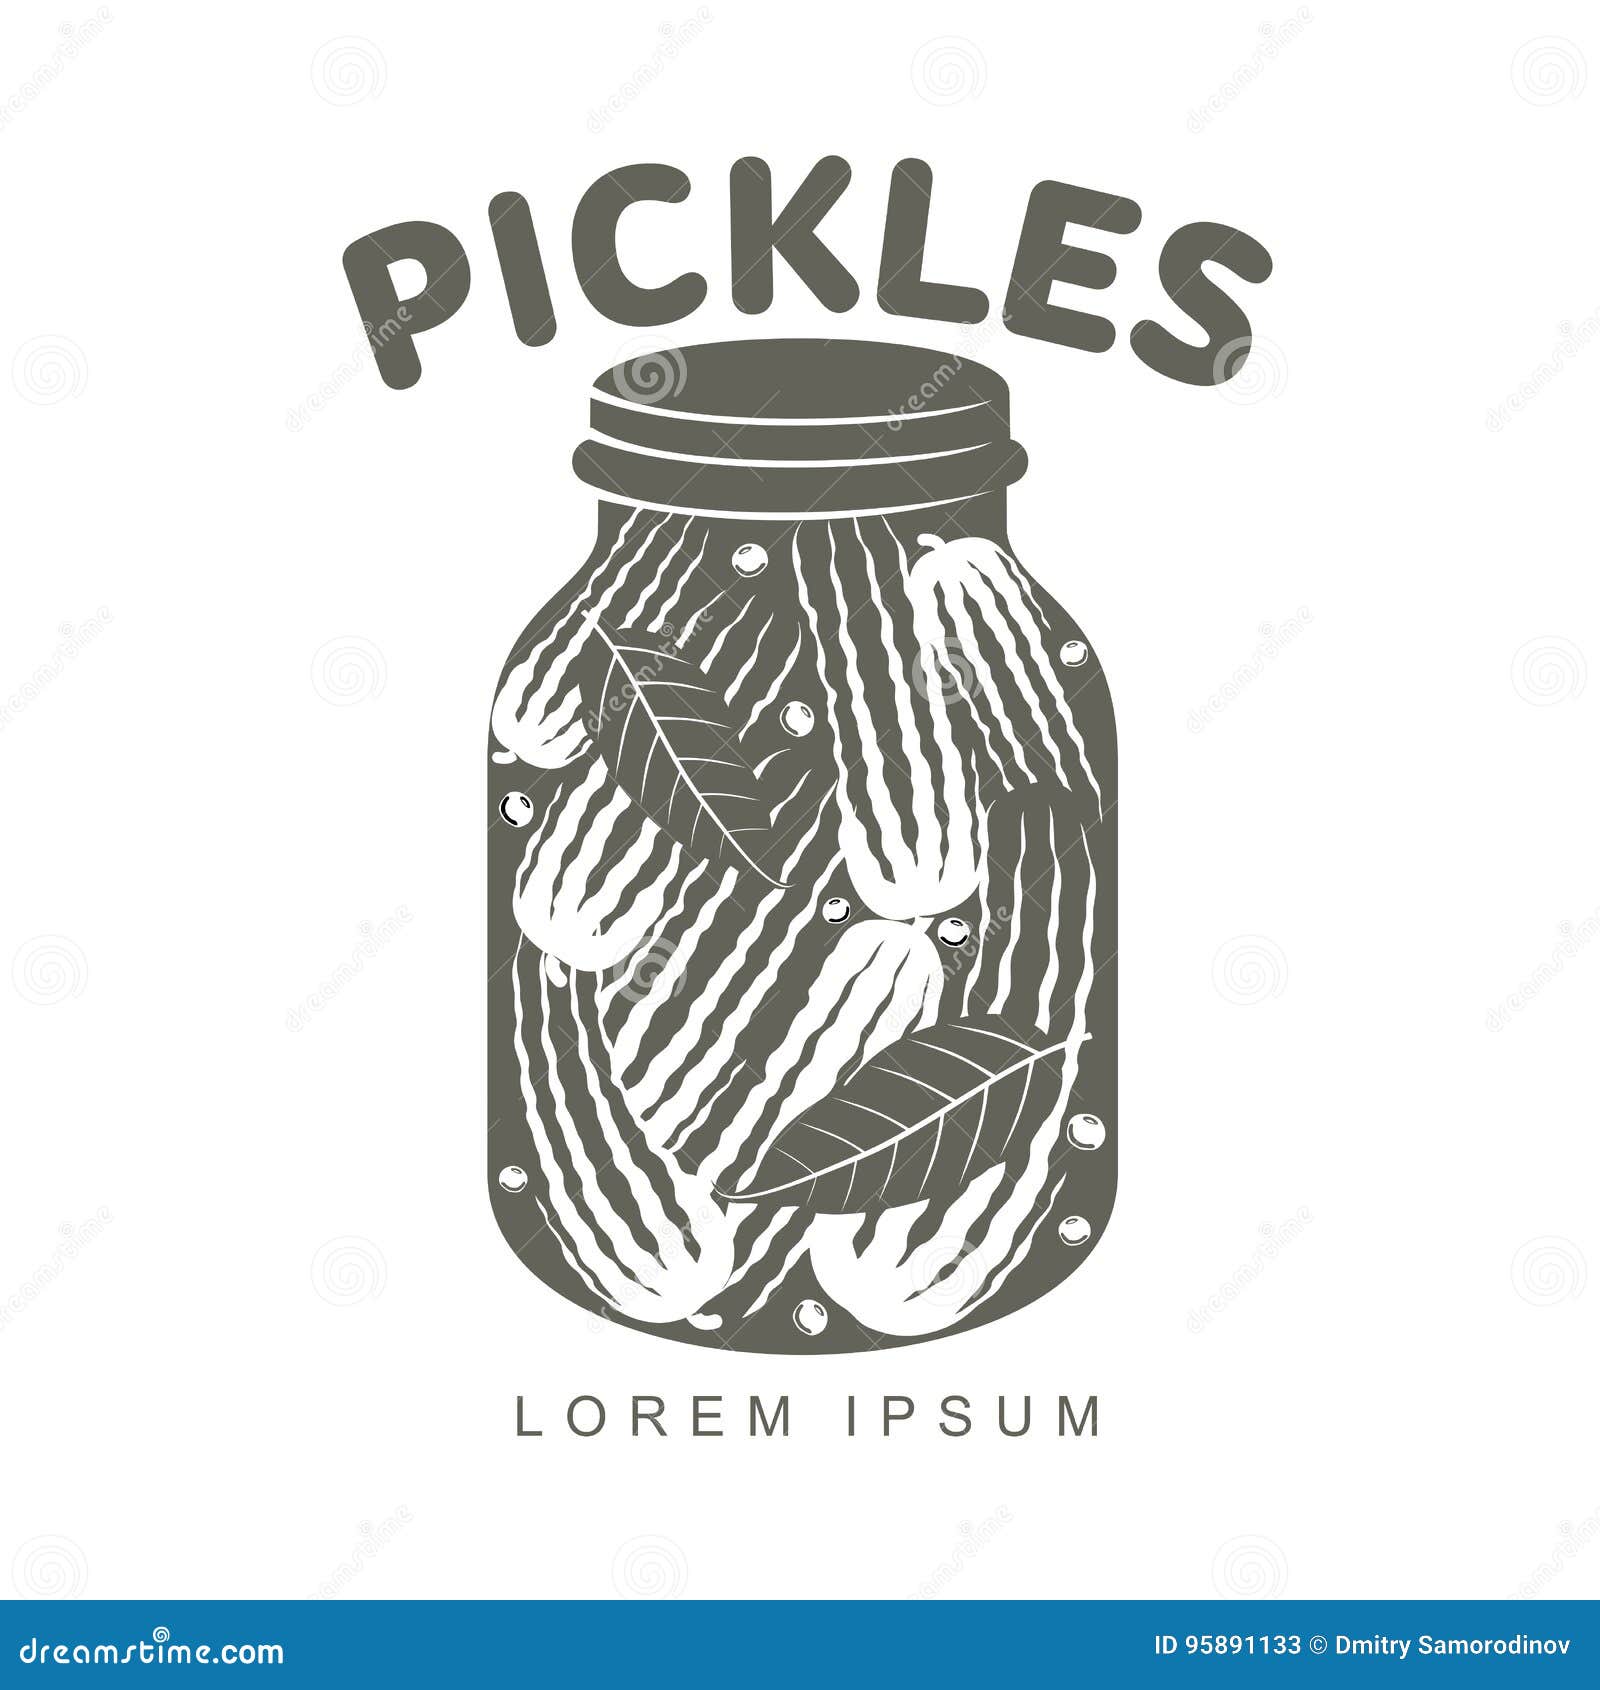 Member Spotlight: Chicken N Pickle | Greater Kansas City Chamber of Commerce